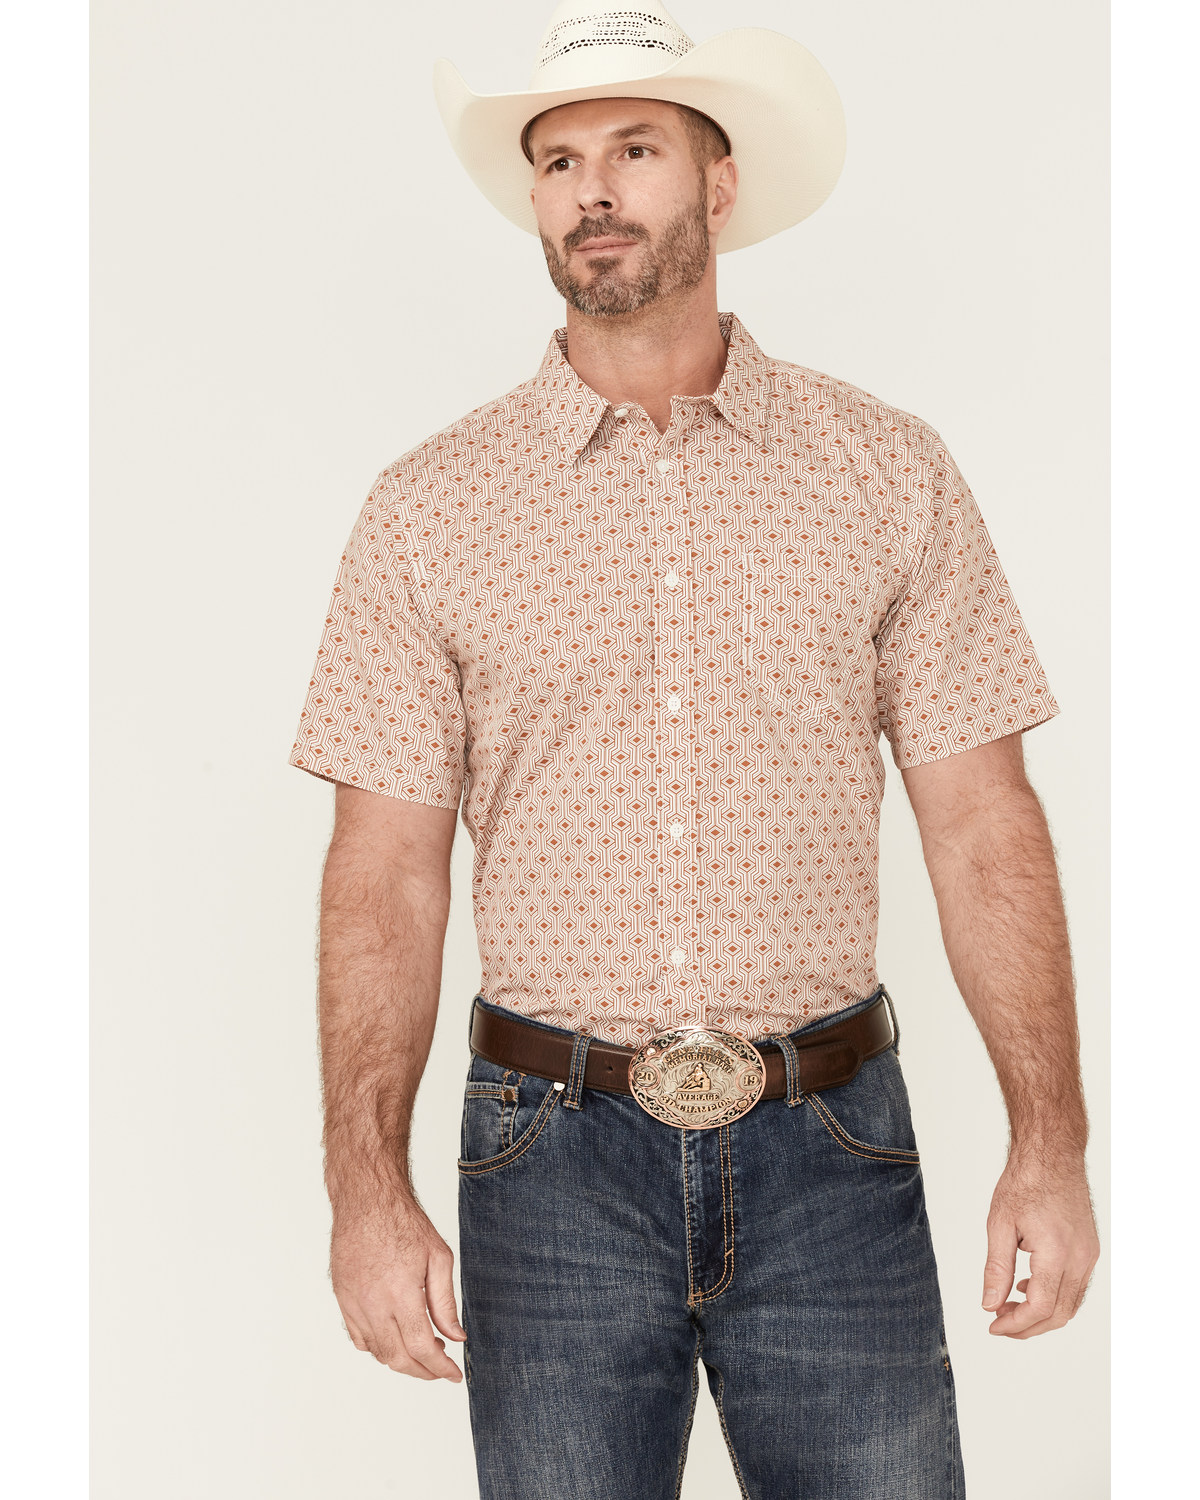 Gibson Men's Cabana Geo Print Short Sleeve Button-Down Western Shirt